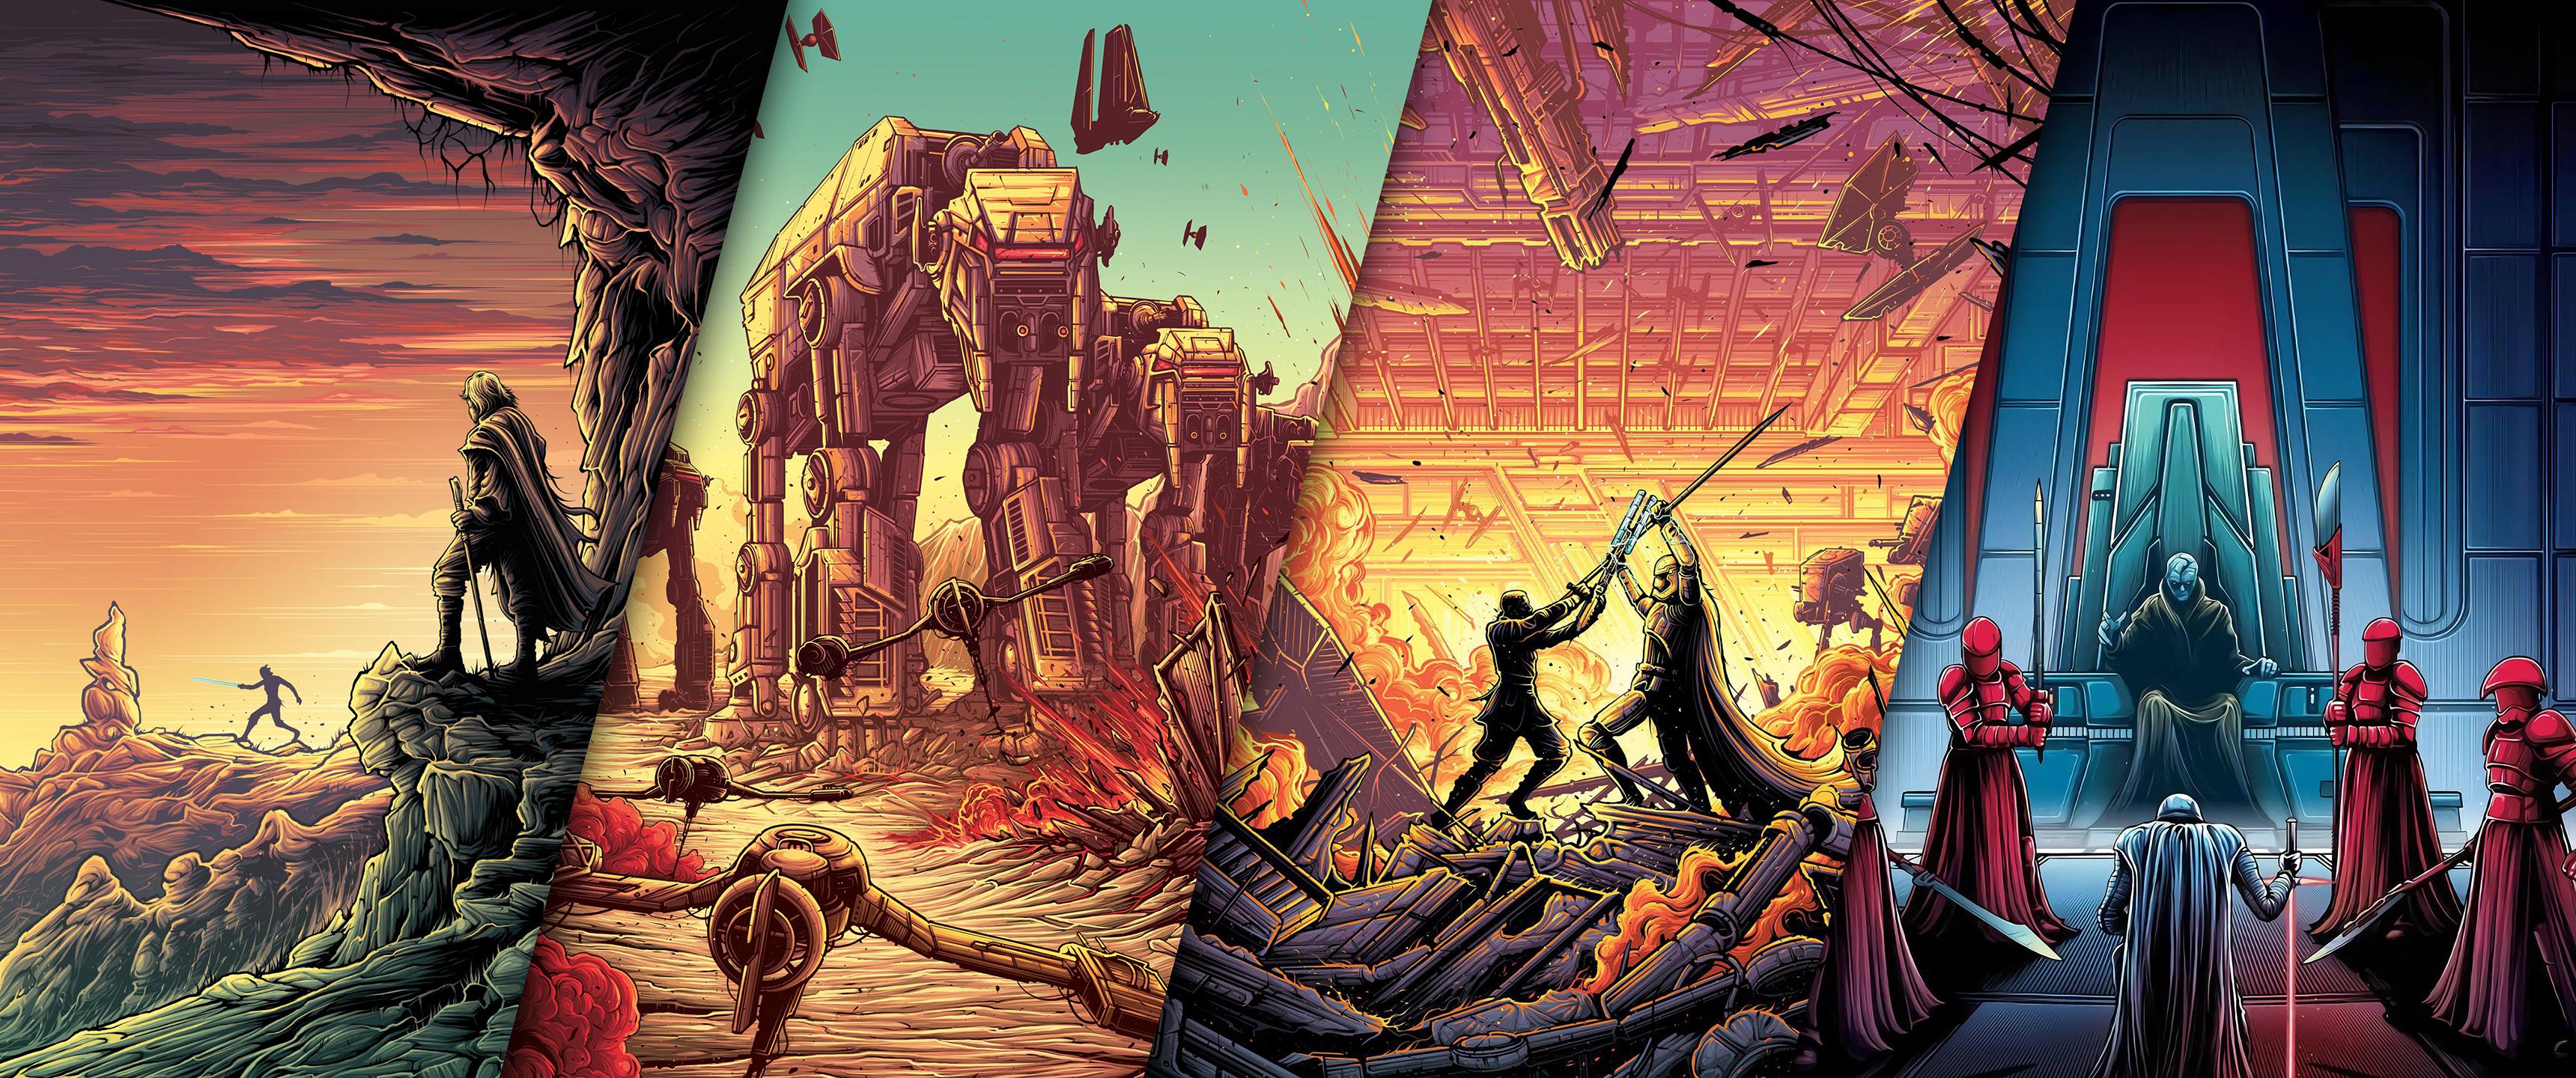 Star Wars The Last Jedi Artwork Wallpapers